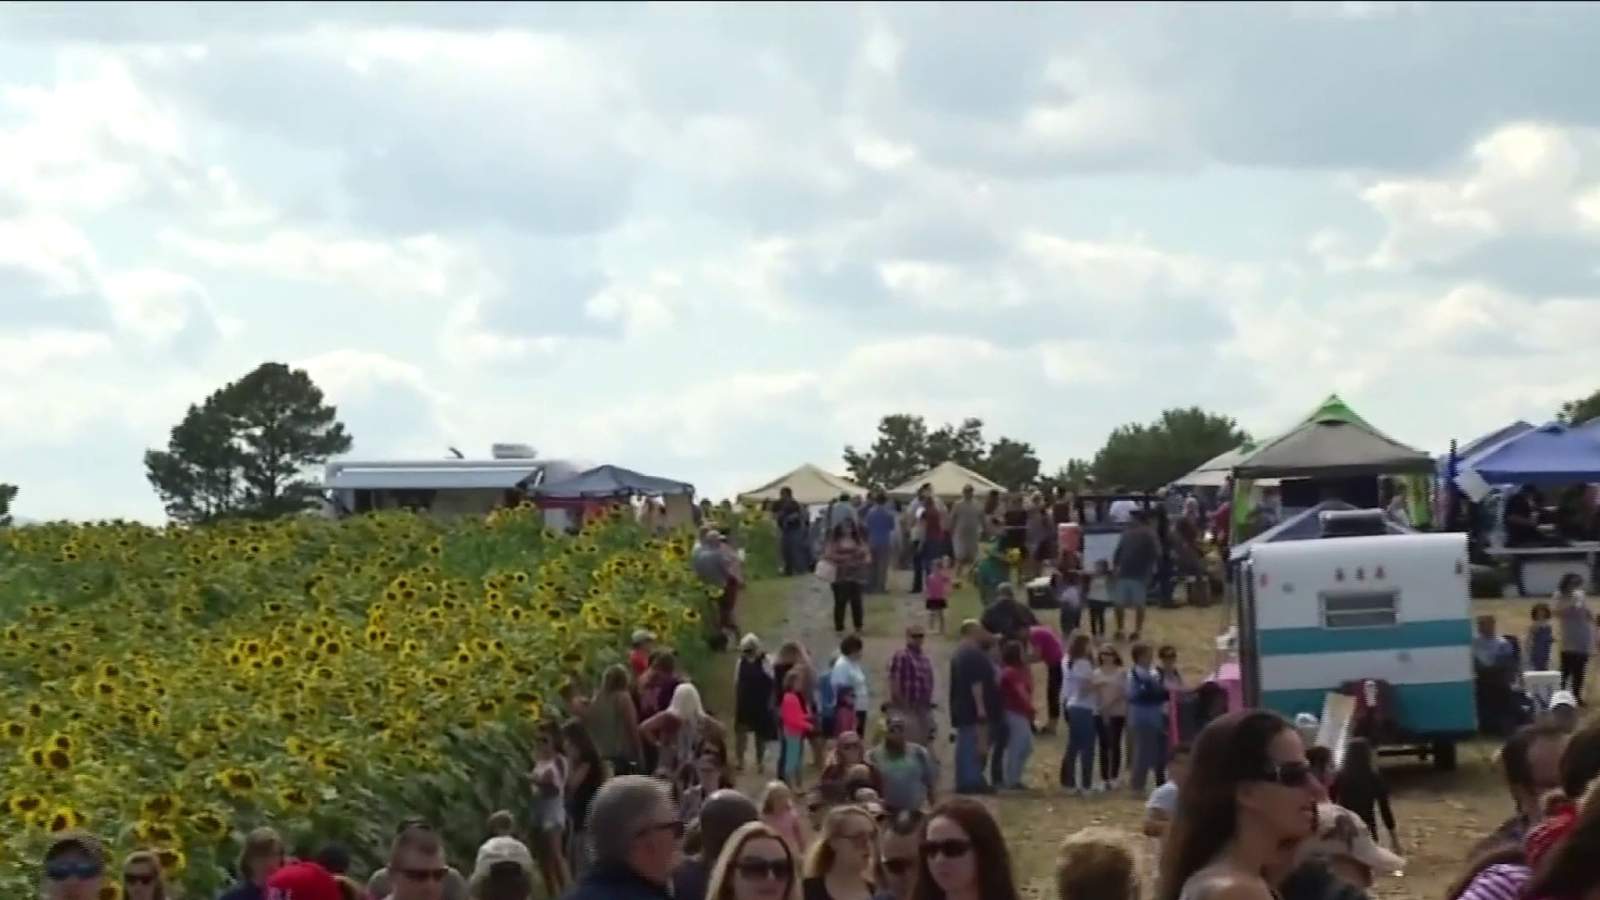 Soak up the last of summer at Beaver Dam Farm Sunflower Festival